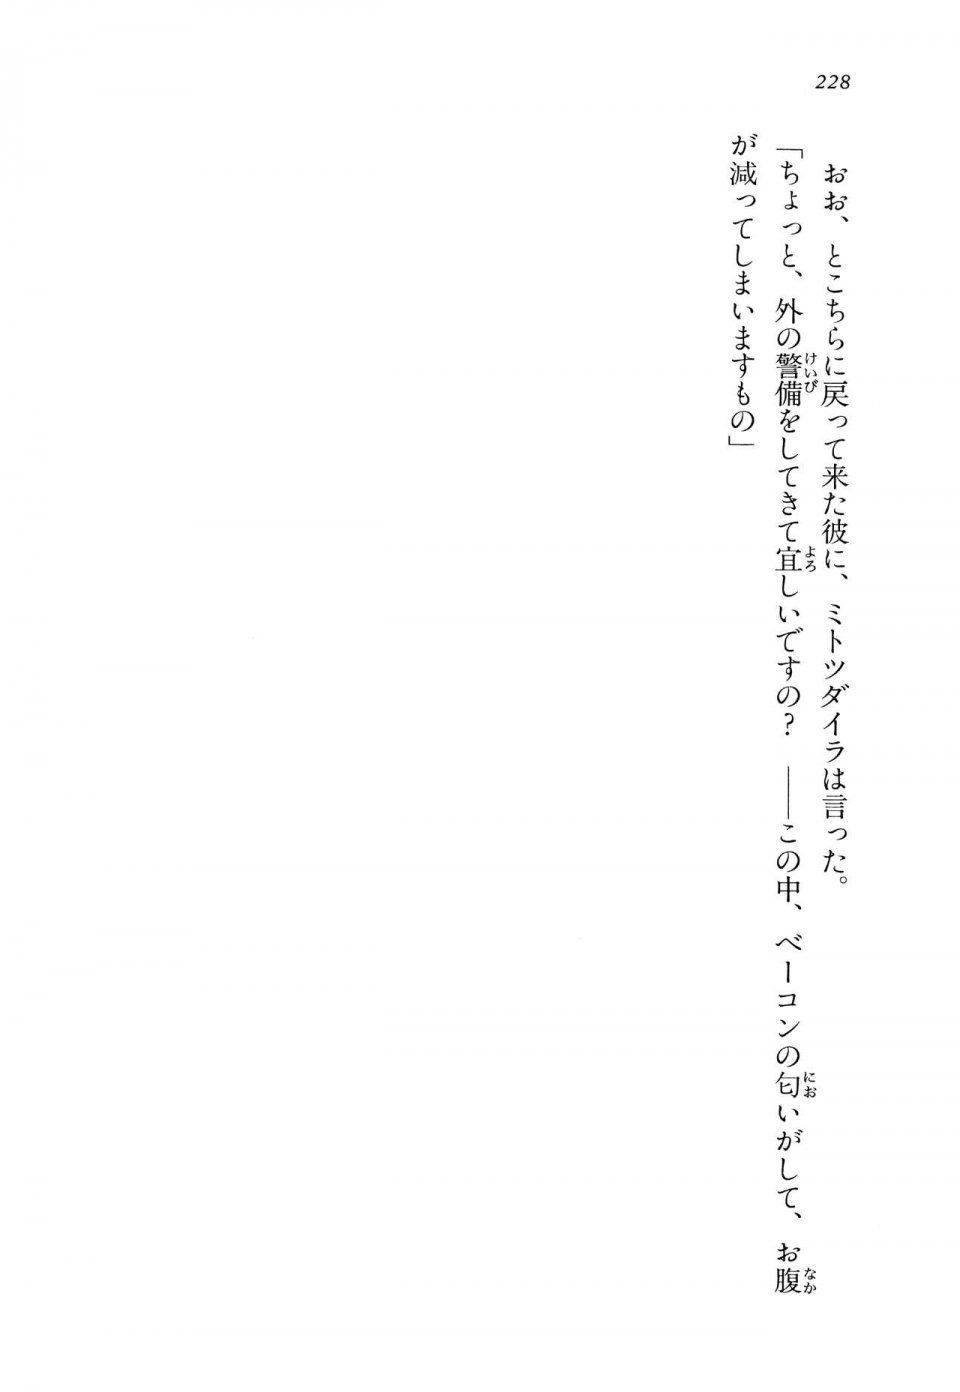 Kyoukai Senjou no Horizon LN Vol 14(6B) - Photo #228